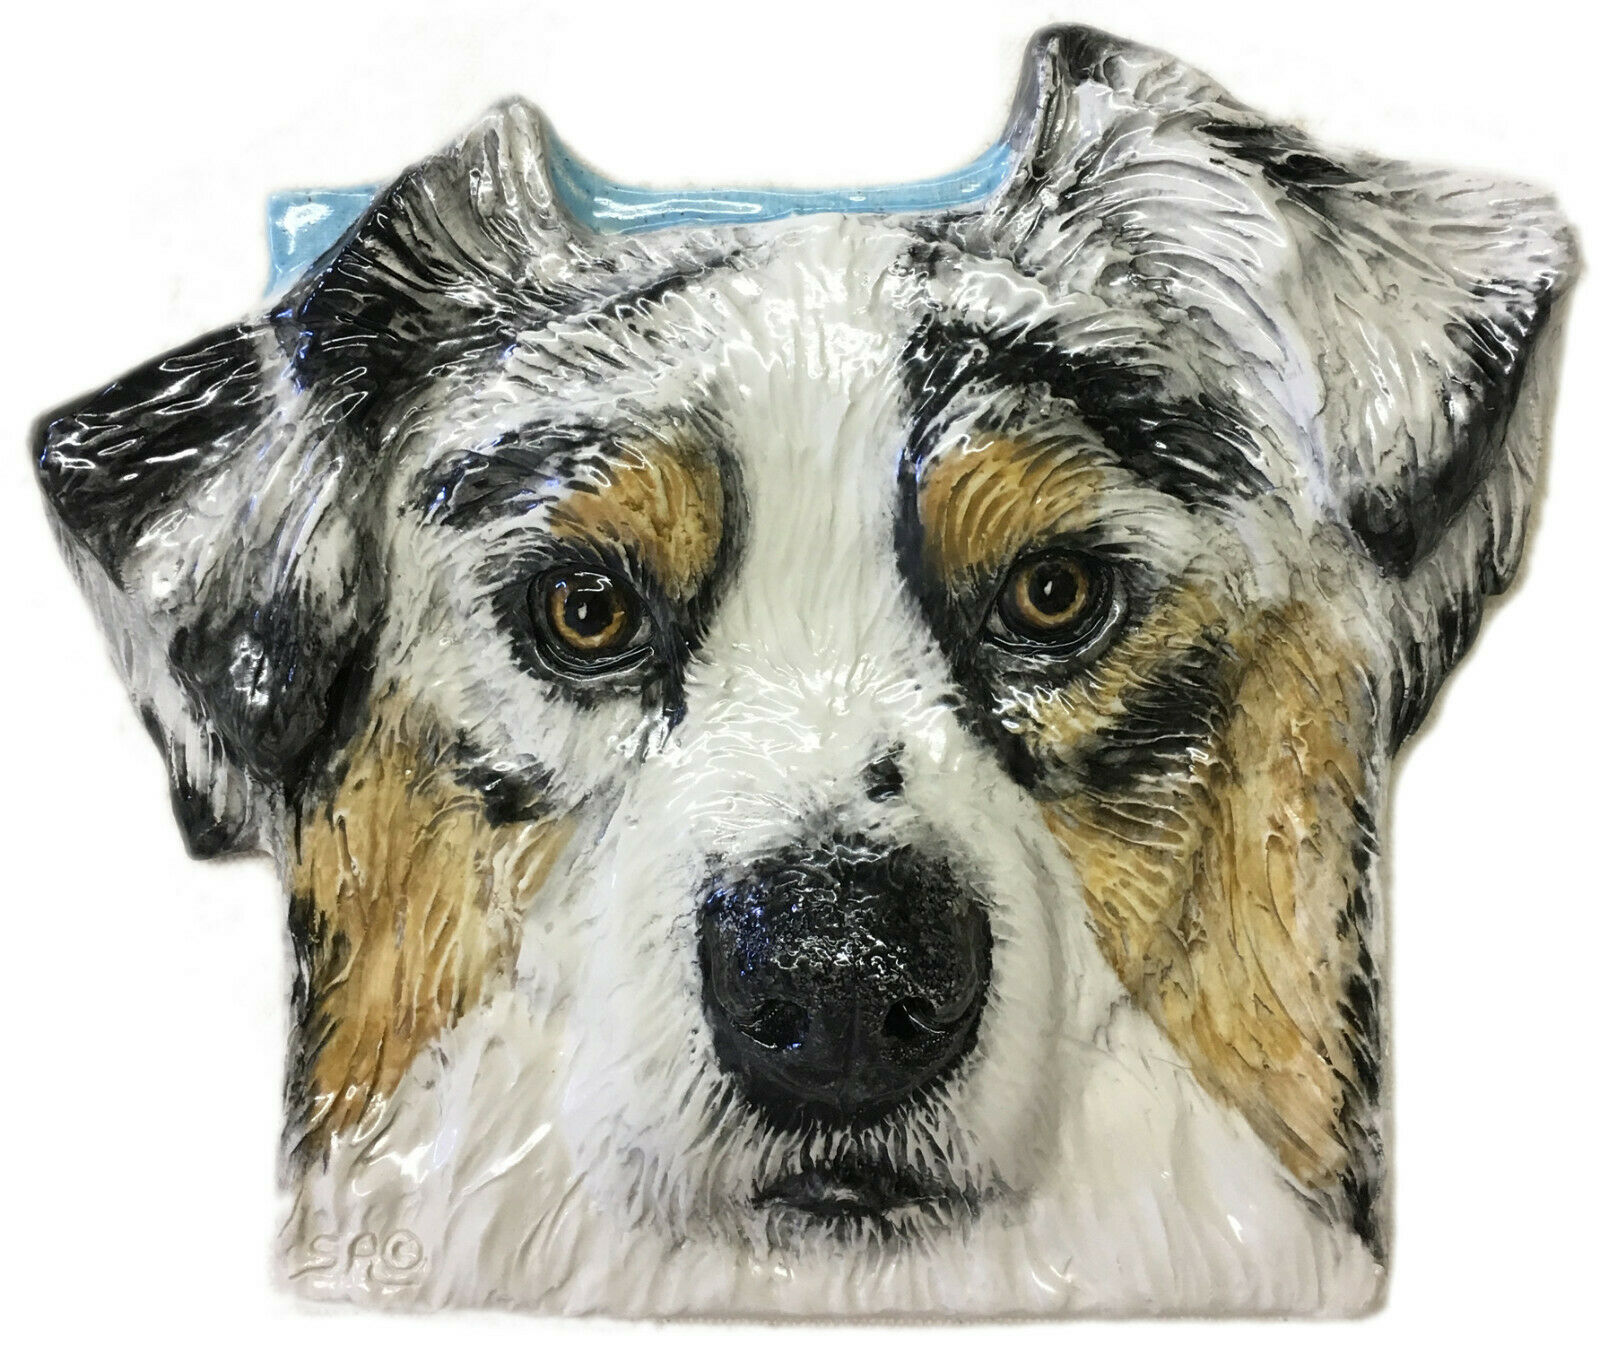 Australian Shepherd Dog 3d Relief Tile Blue Eyes Pet Ceramic Handmade Portrait